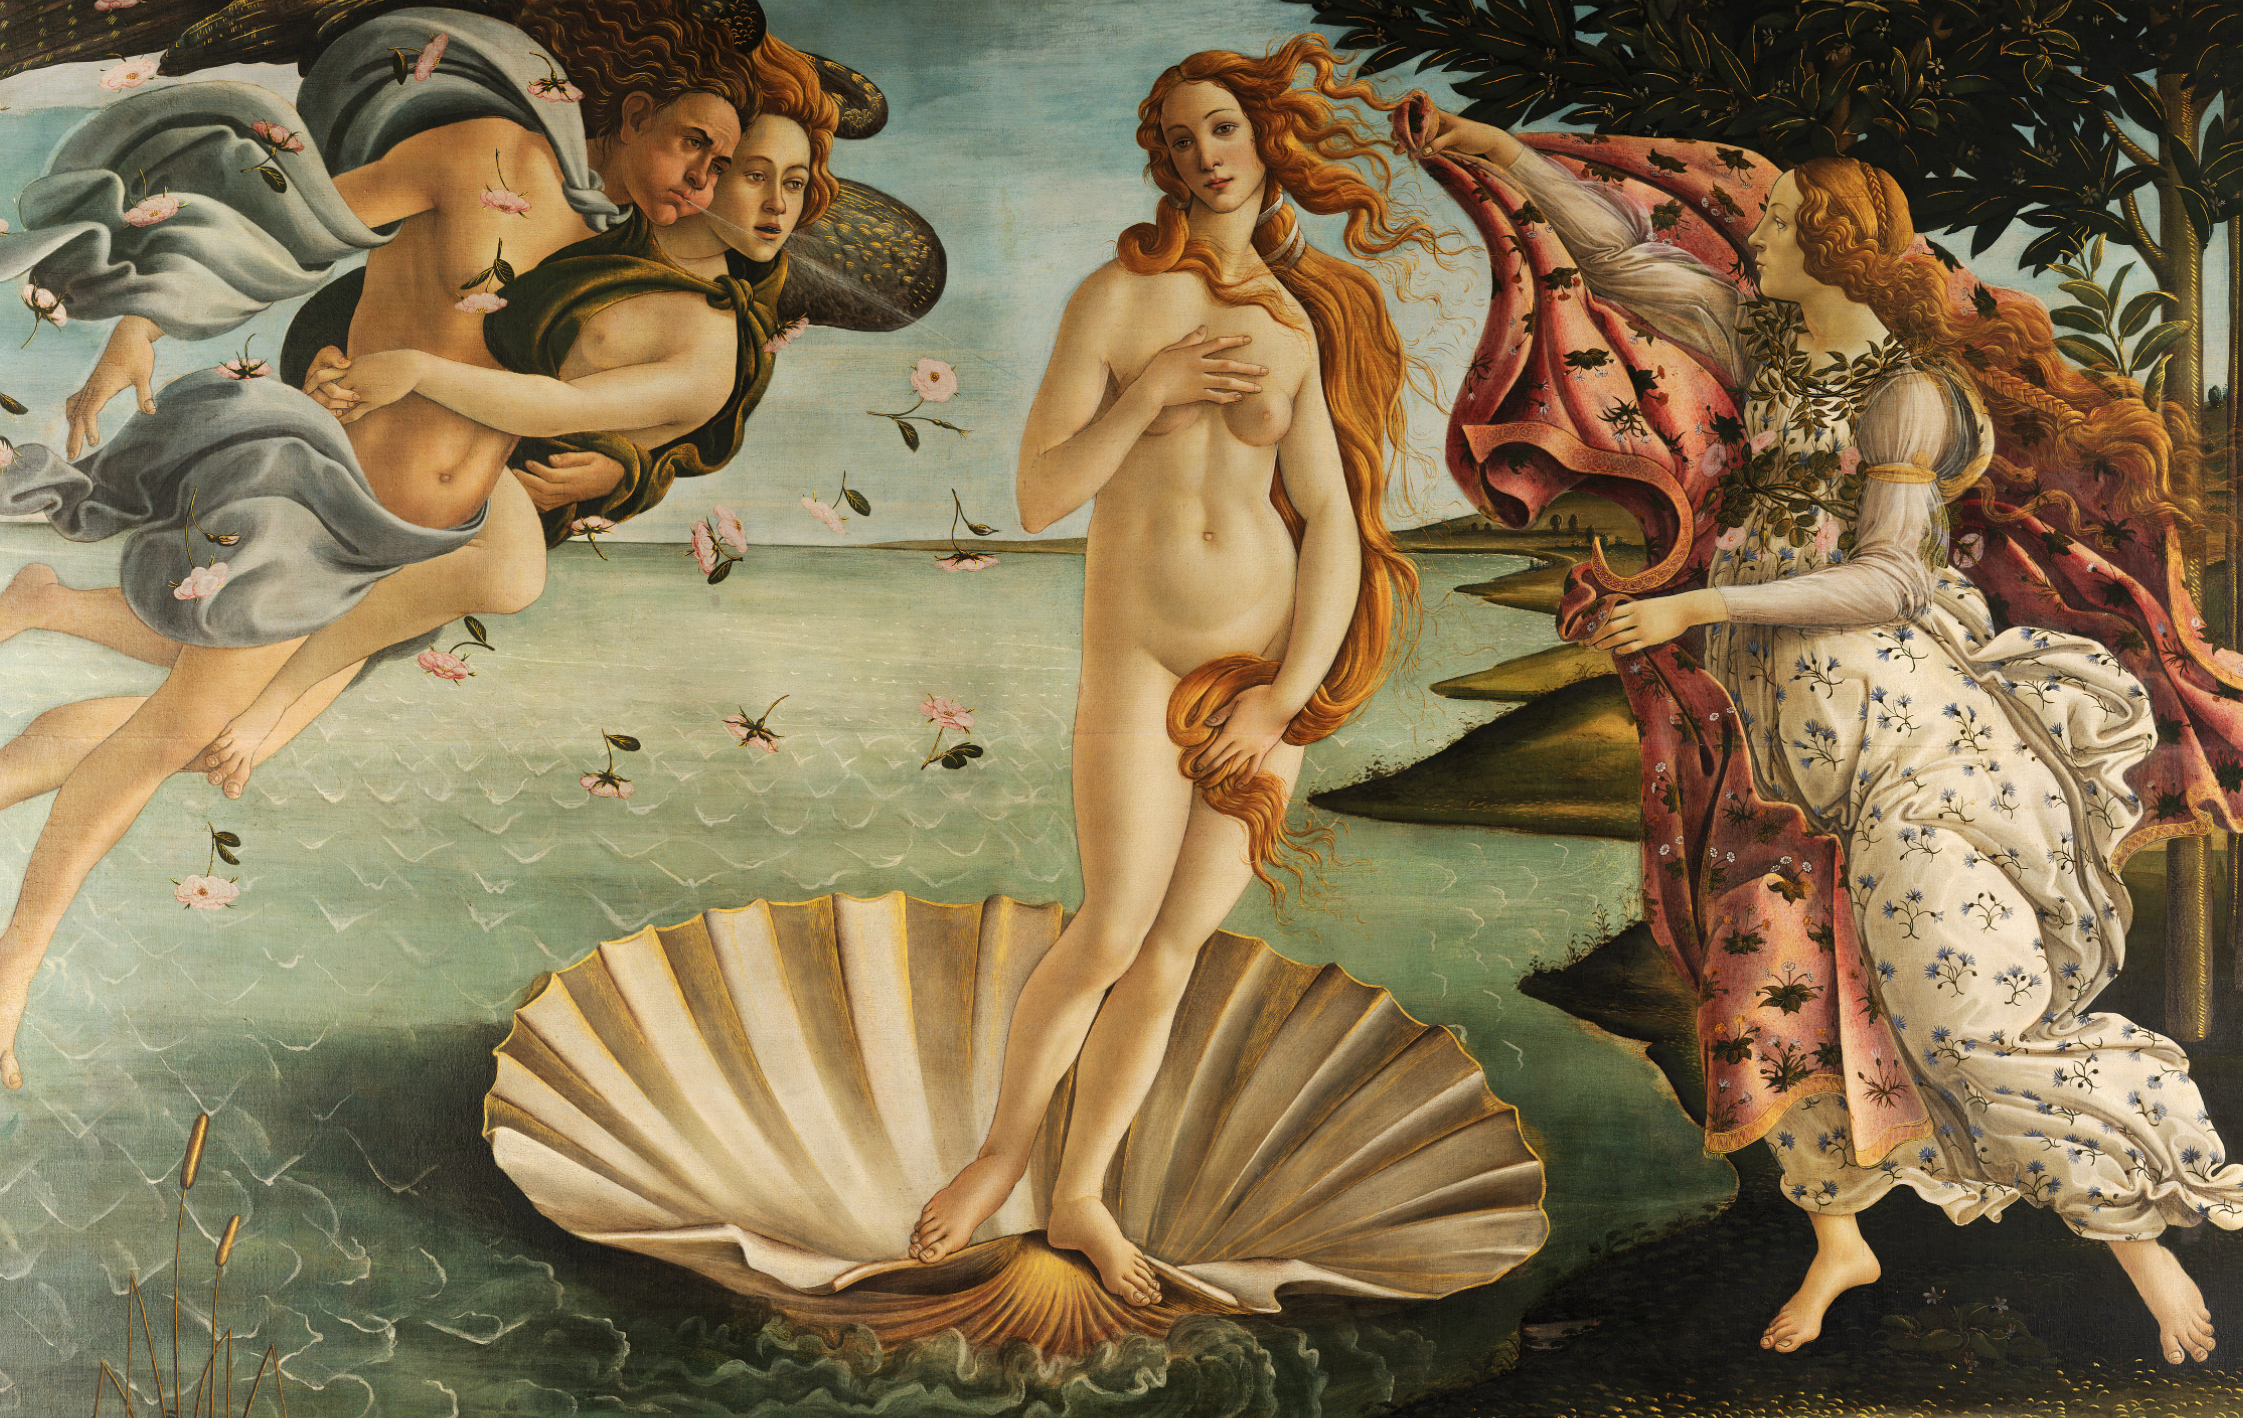 La pintura de Sandro Botticelli: belleza renacentista plasmada en lienzo